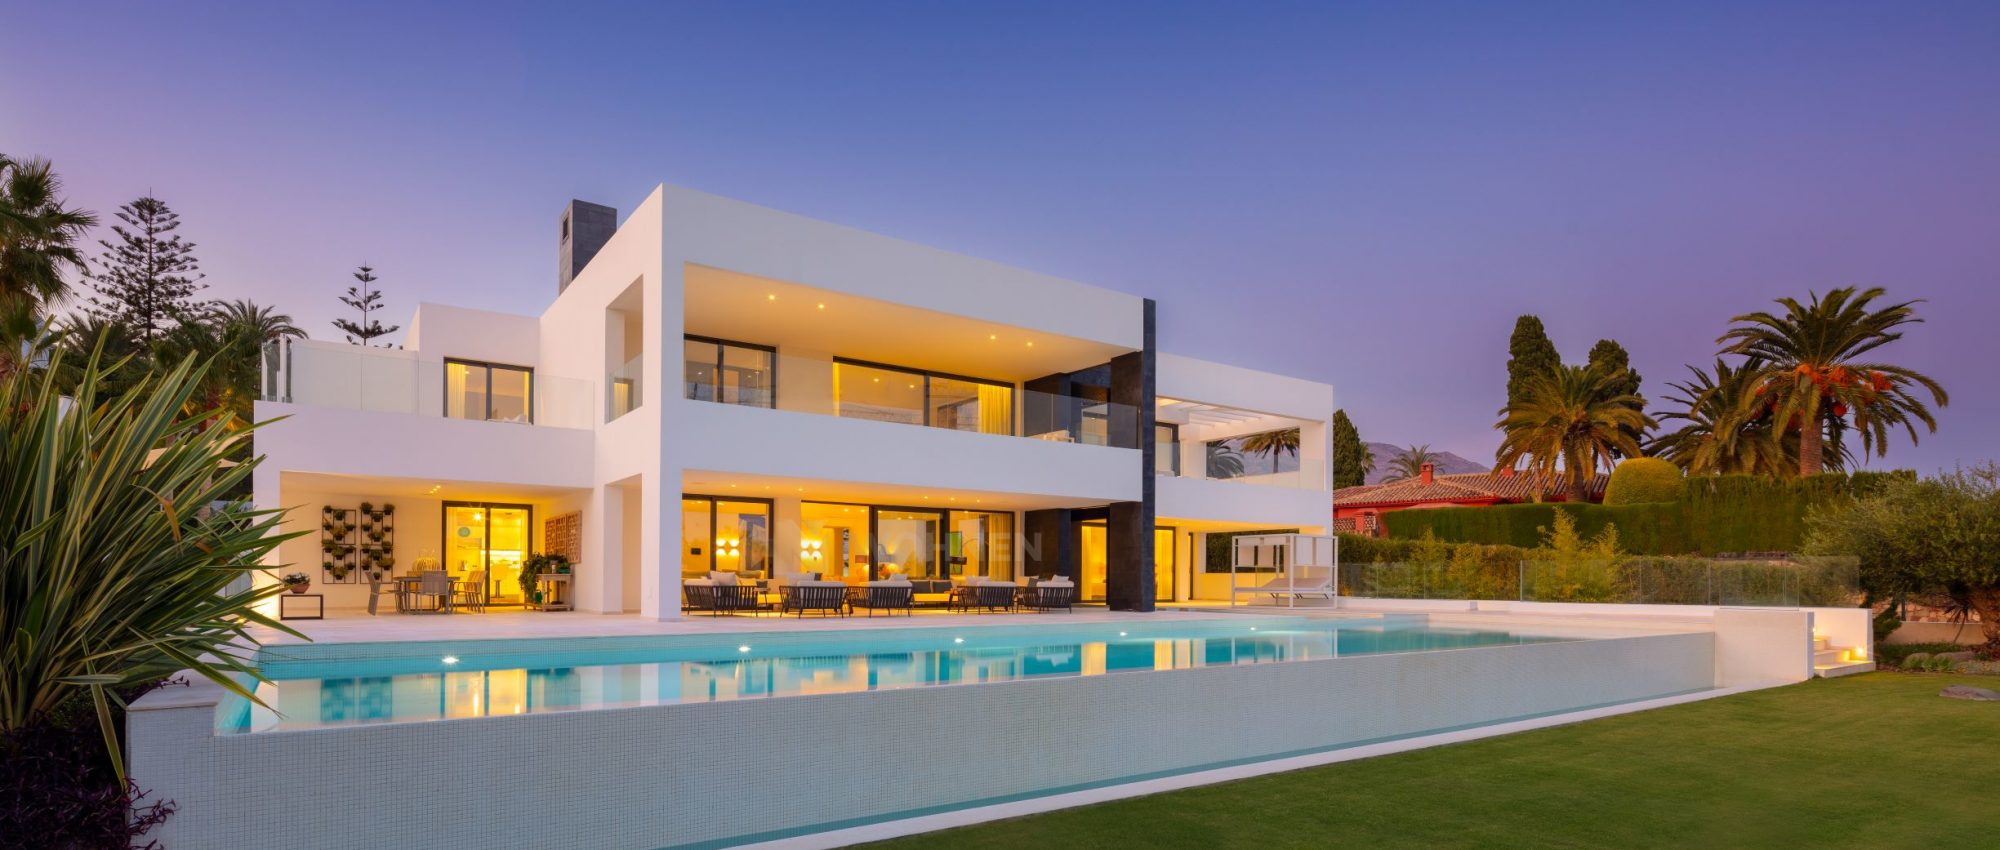 Brand new modern villa in the heart of La Cerquilla, Nueva Andalucia, Marbella